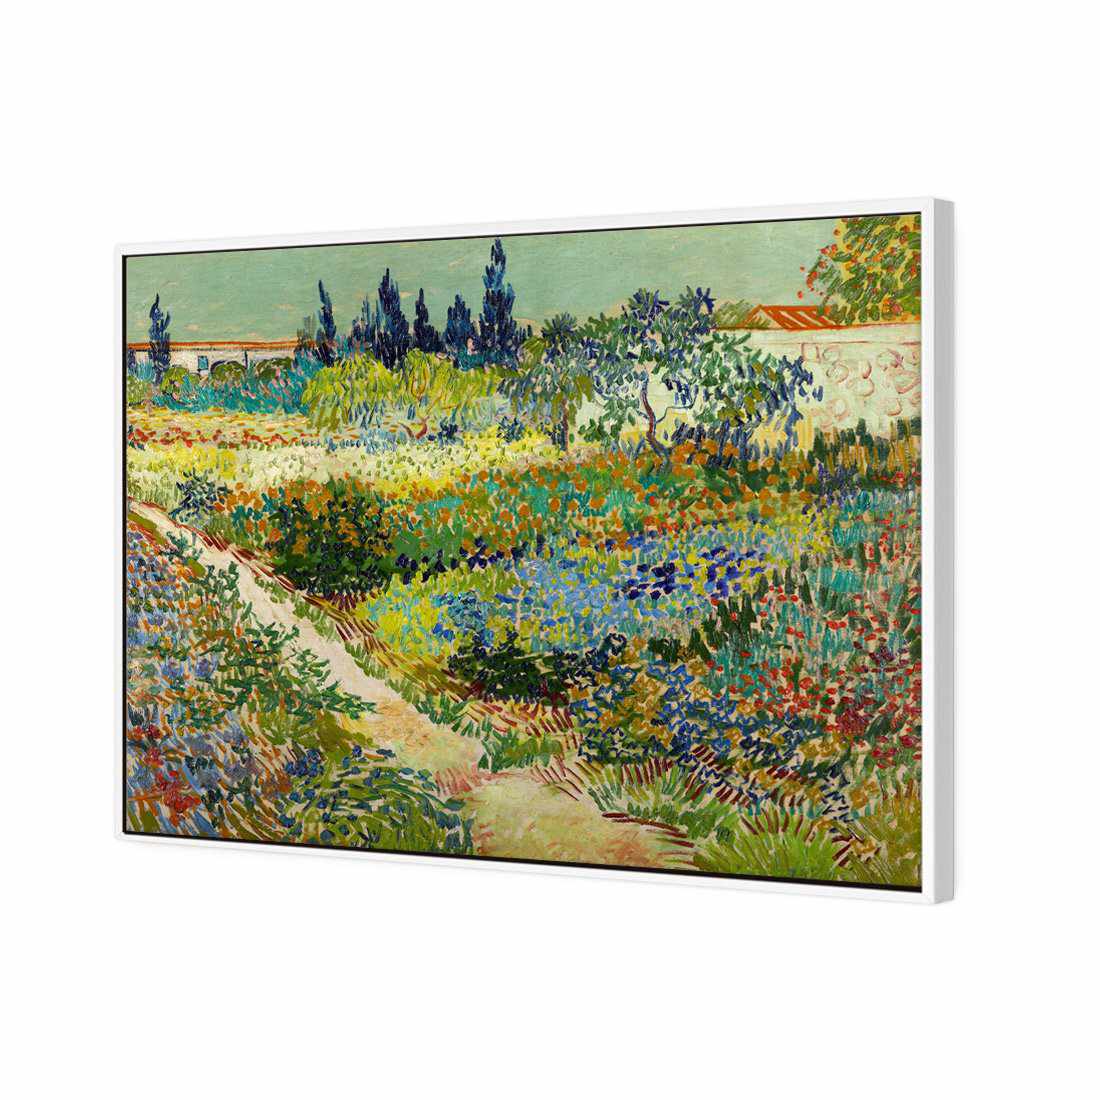 Garden At Arles - Van Gogh Canvas Art-Canvas-Wall Art Designs-45x30cm-Canvas - White Frame-Wall Art Designs